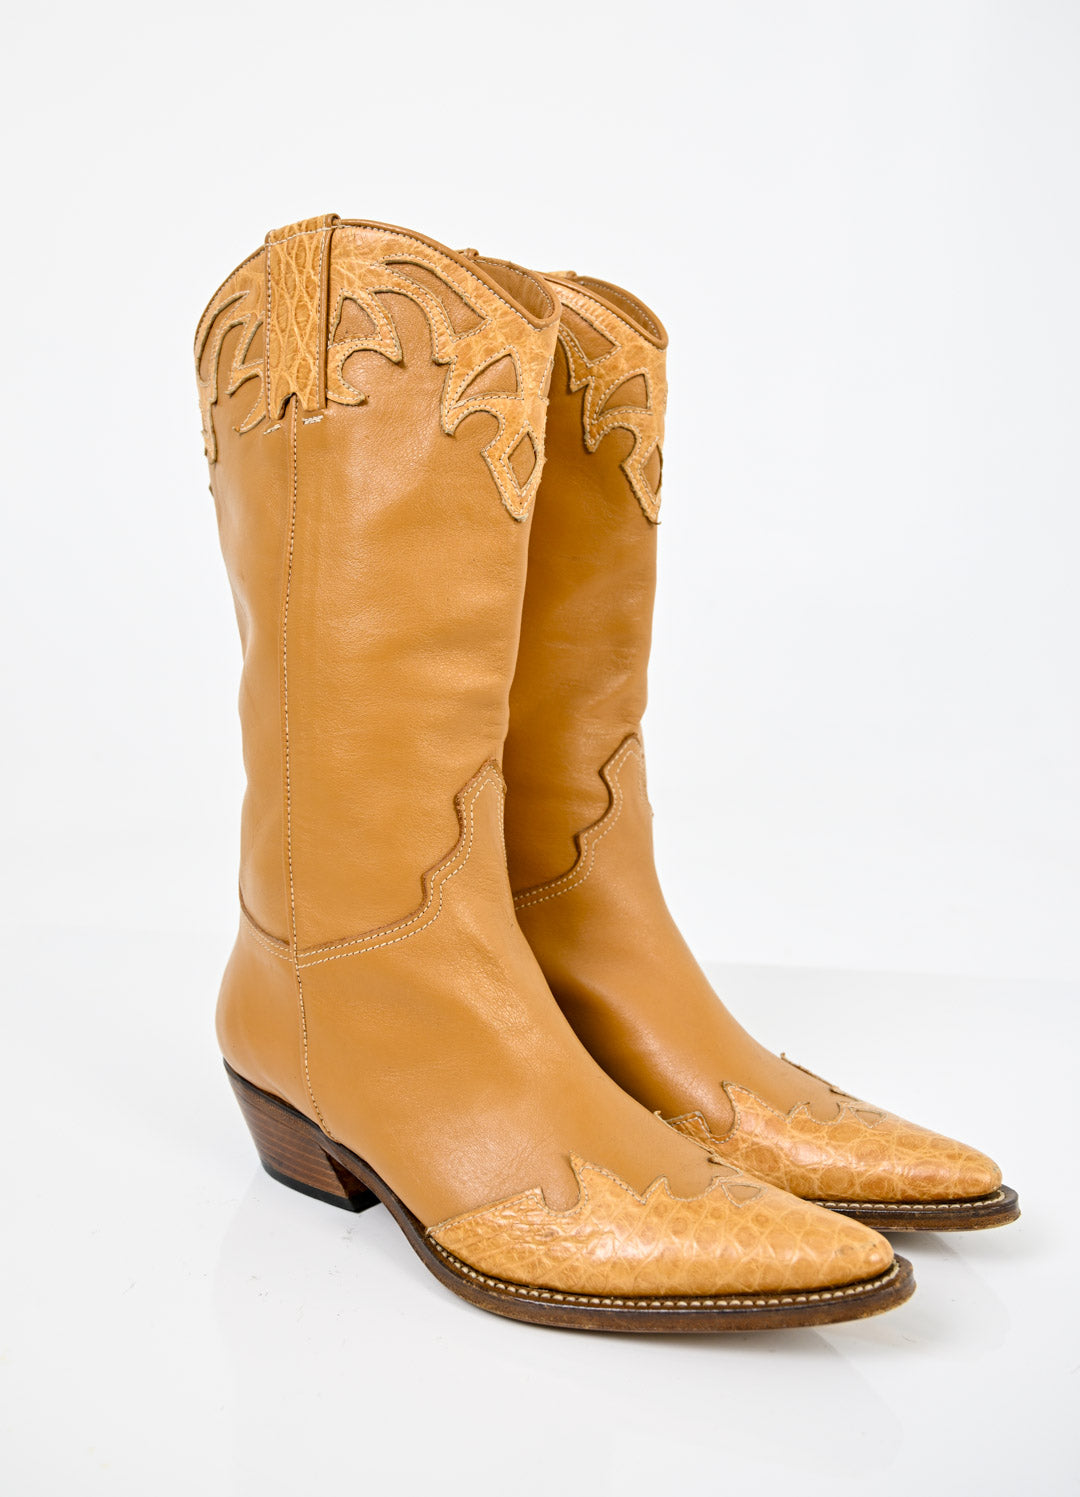 Butterscotch Leather Cowboy Boots (39)